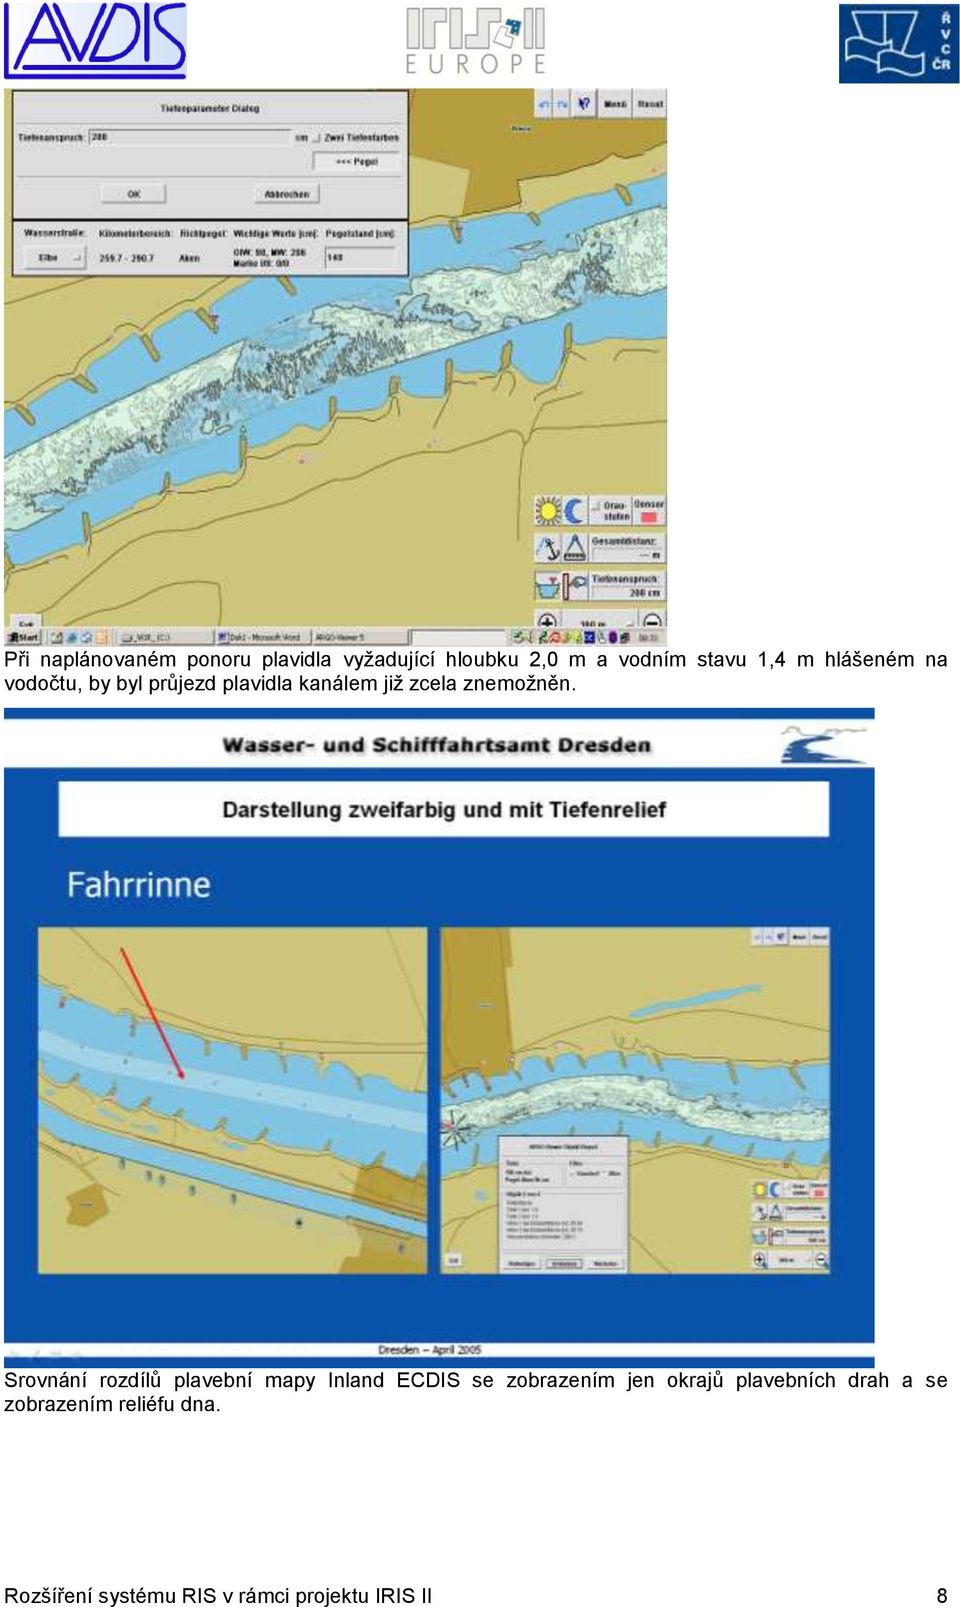 Srovnání rozdílů plavební mapy Inland ECDIS se zobrazením jen okrajů